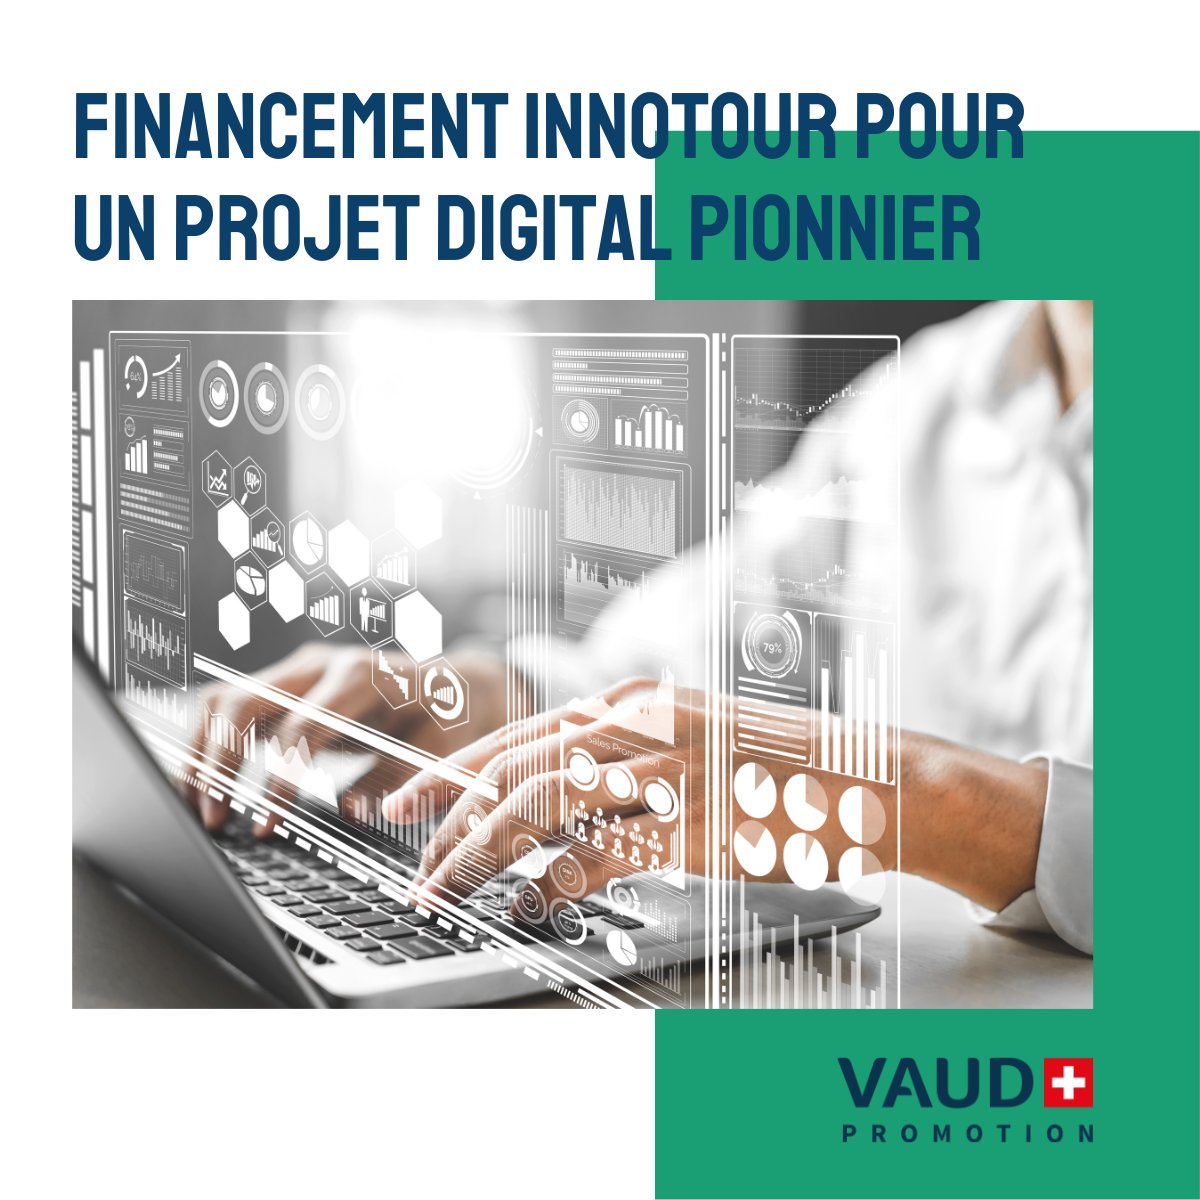 🔍📊 Vaud Promotion obtient un important financement d’Innotour, pour un projet digital pionnier ! Retrouvez le communiqué de presse complet ➡️ vaud.ch/actualites/imp… #myvaud #vaudpromotion #datamanagement #innotour